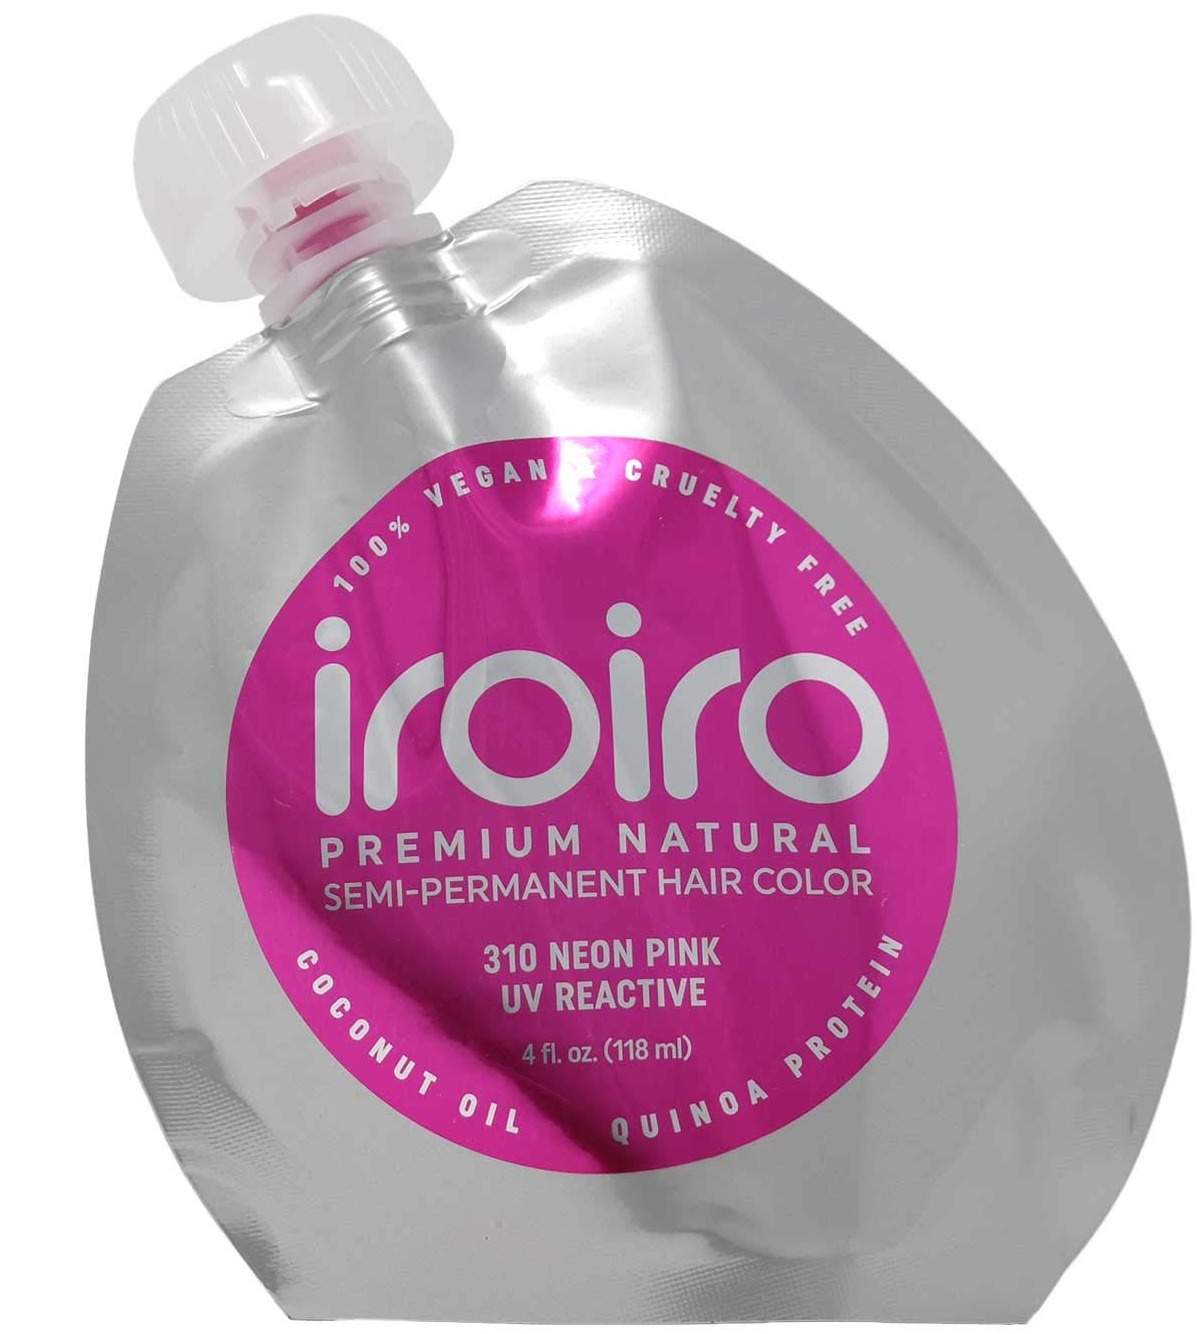 IroIro Premium Natural Semi-permanent Hair Color Neon